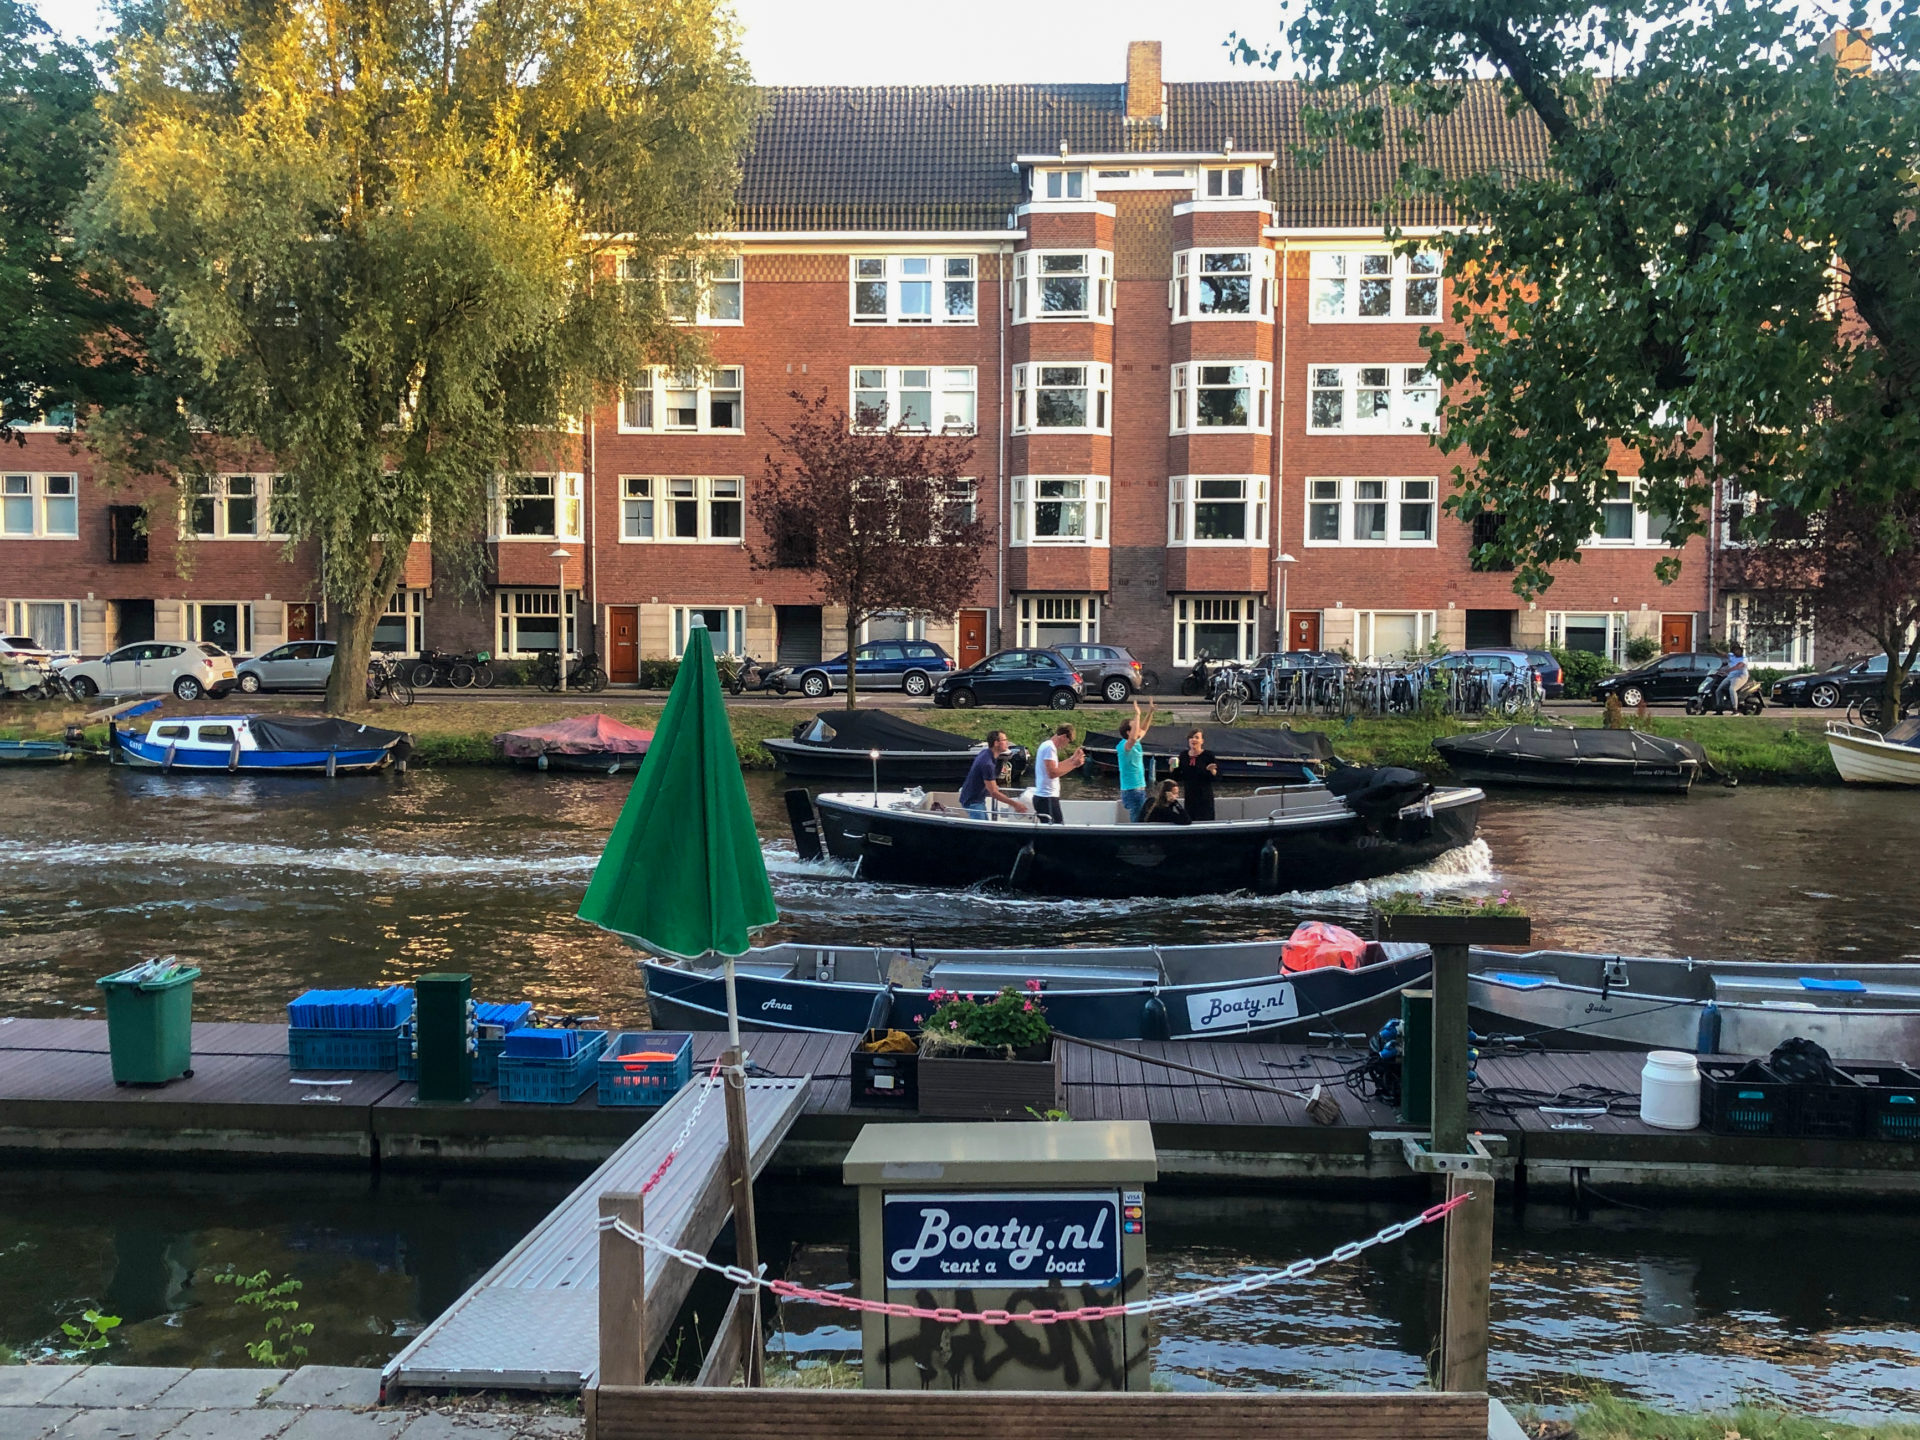 Bootverleih im Amsterdamer Viertel De Pijp weit jenseits der touristischen Innenstadt